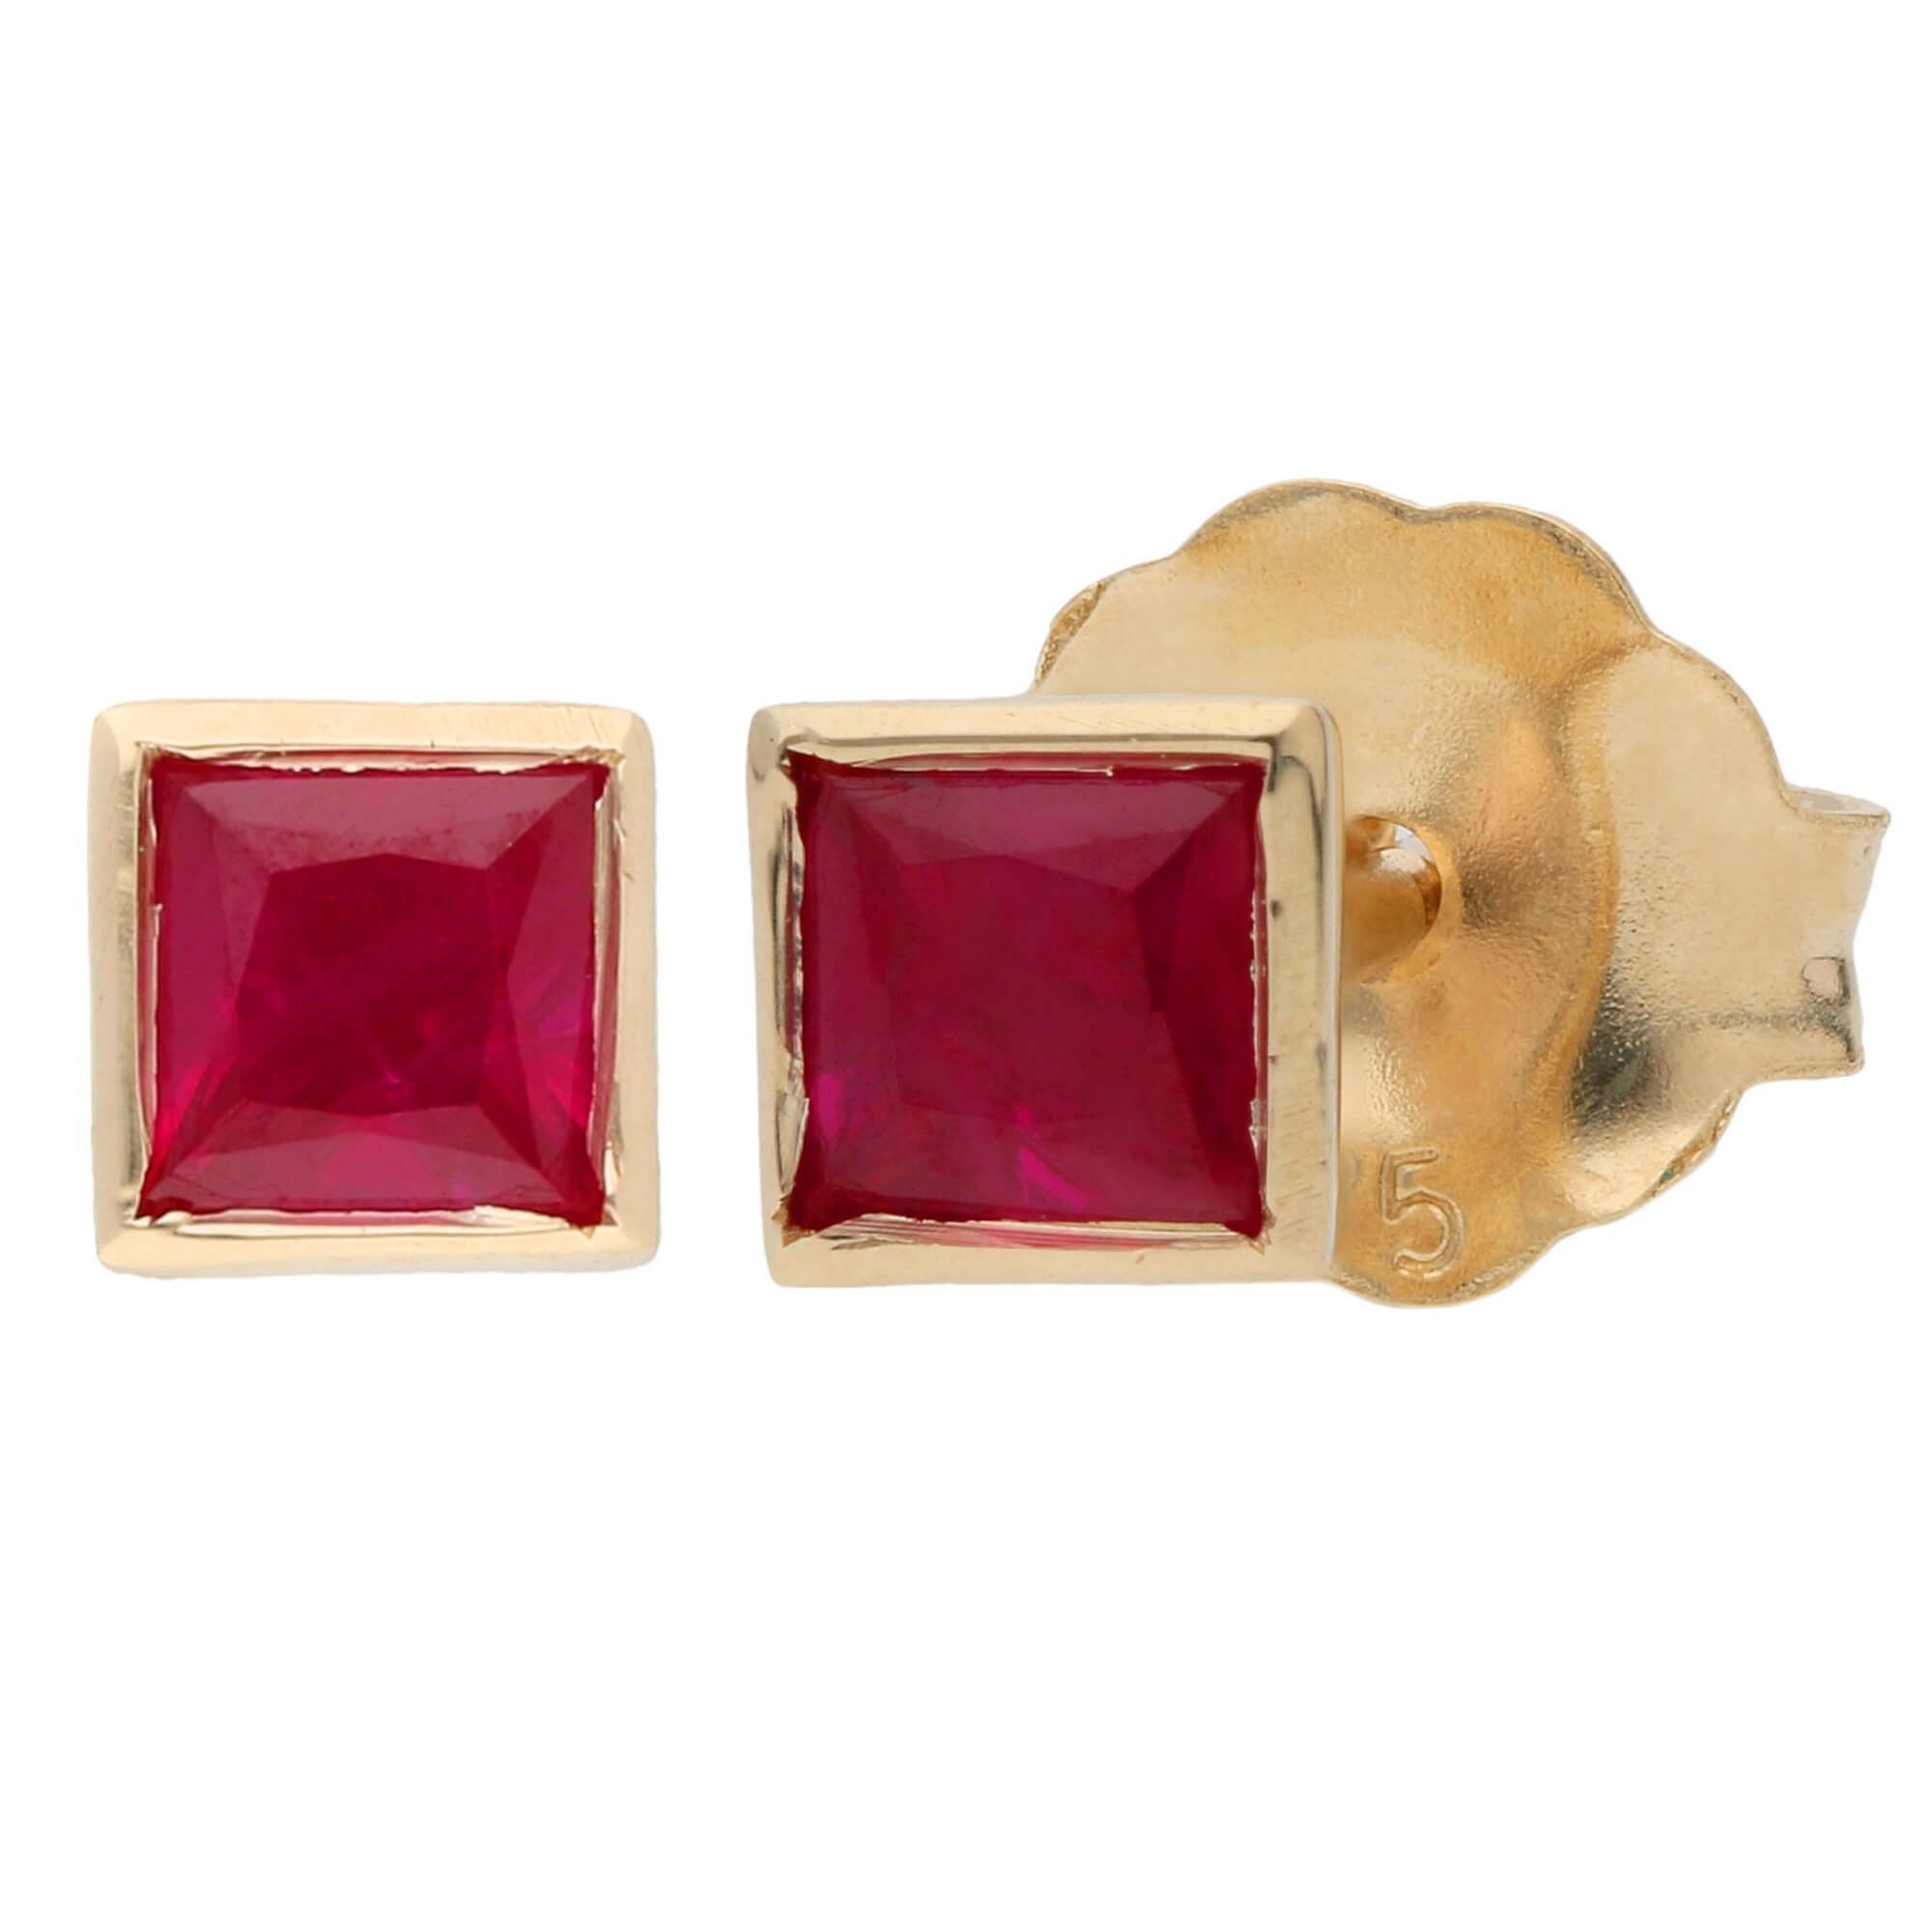 Share 138+ square design gold earrings latest - seven.edu.vn